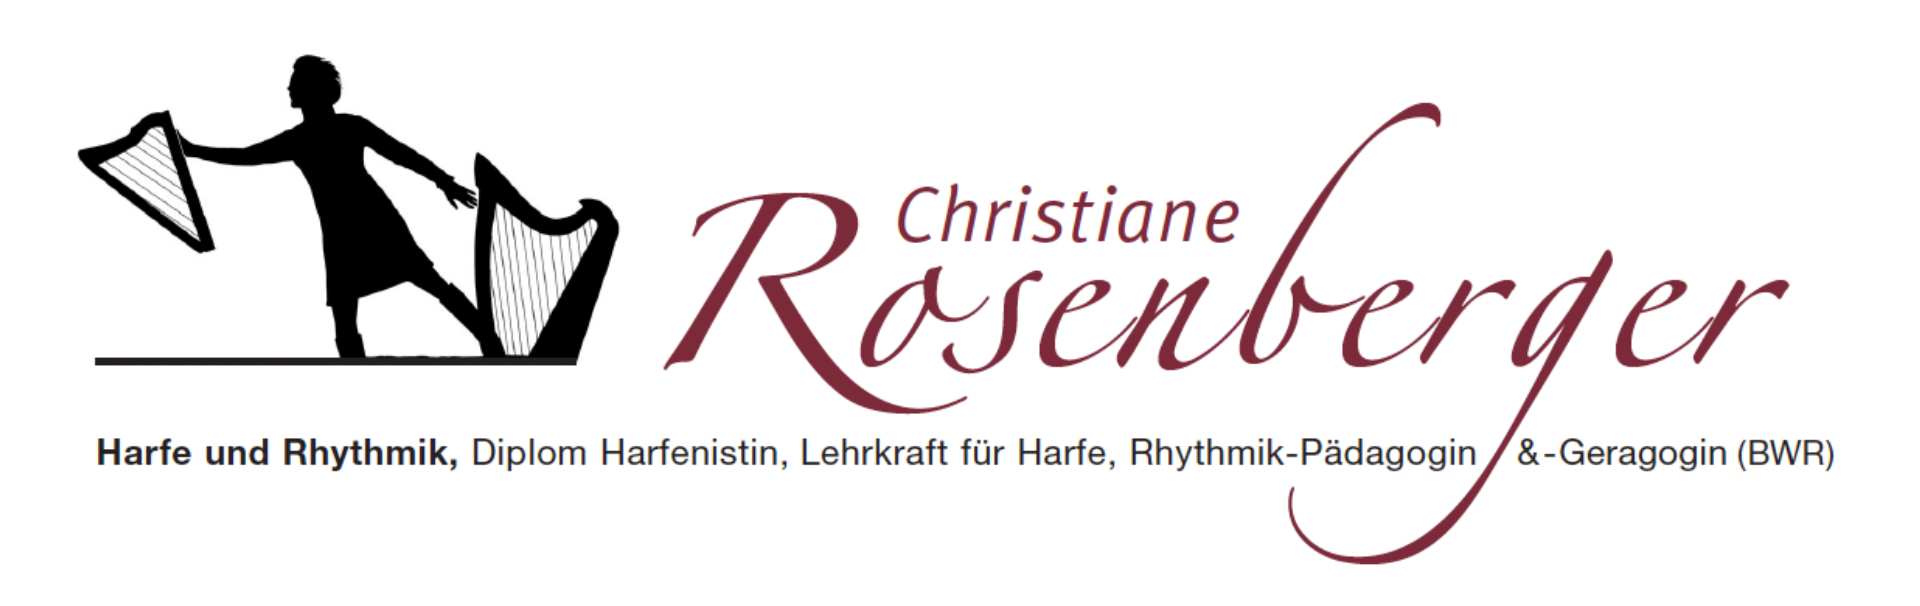 Christiane Rosenberger